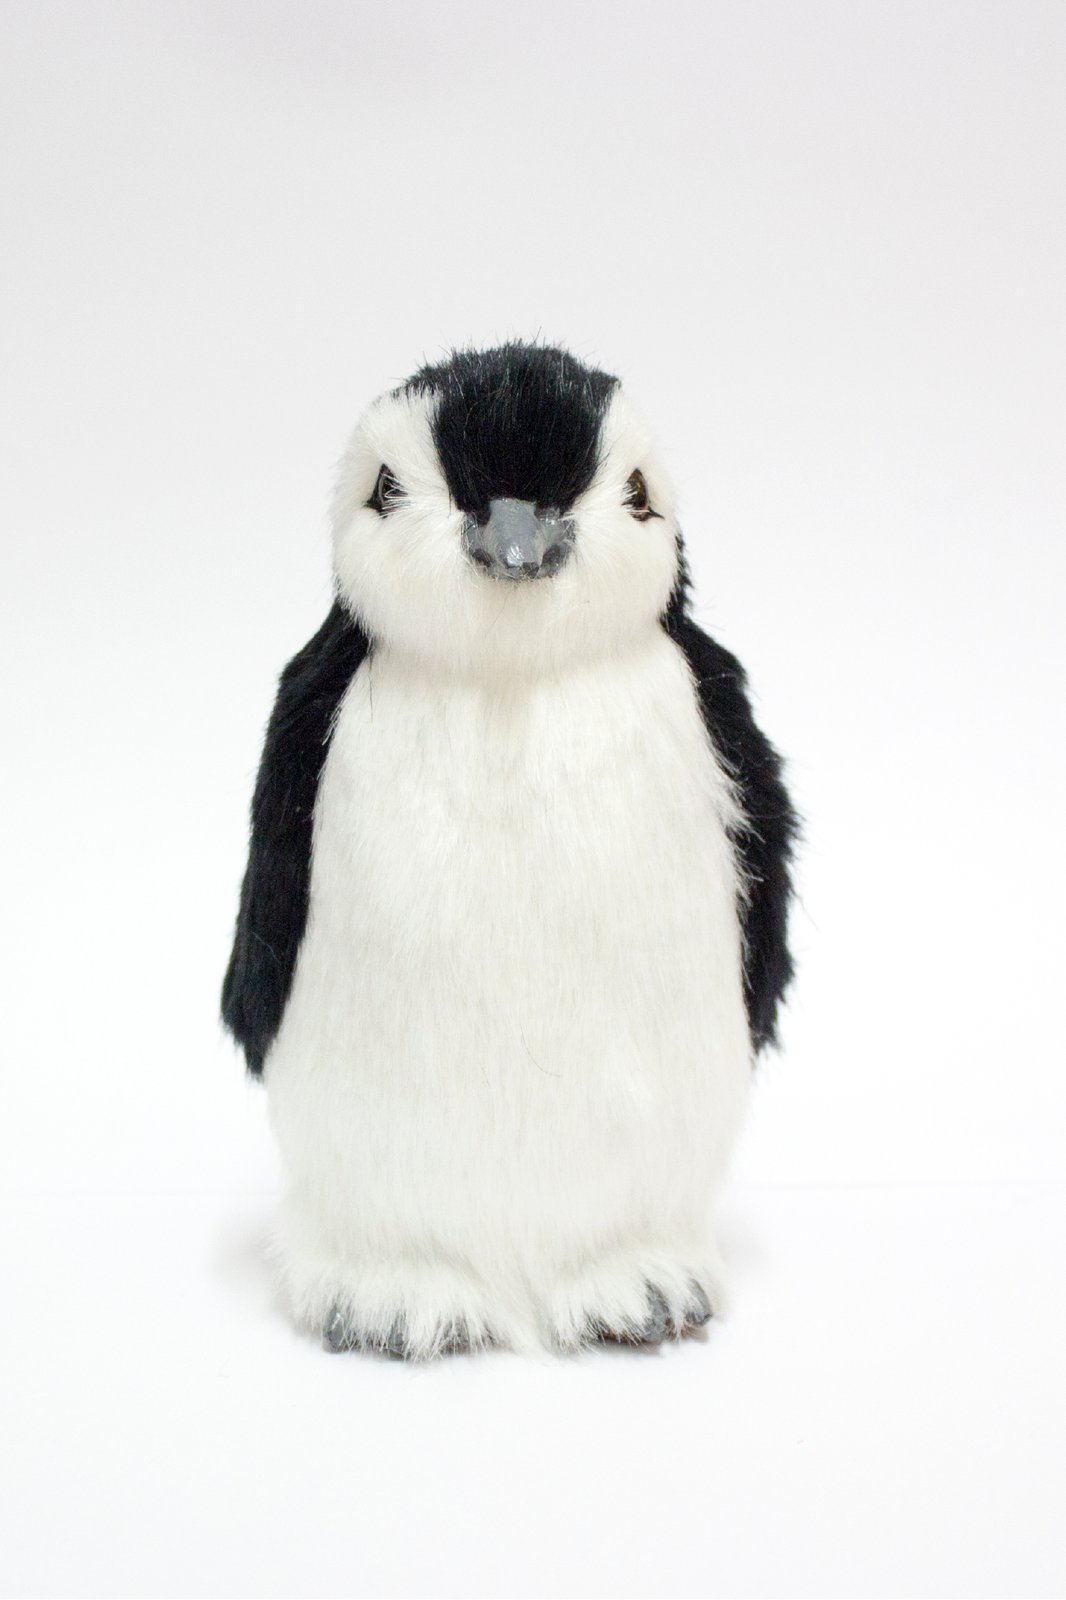 misery penguin